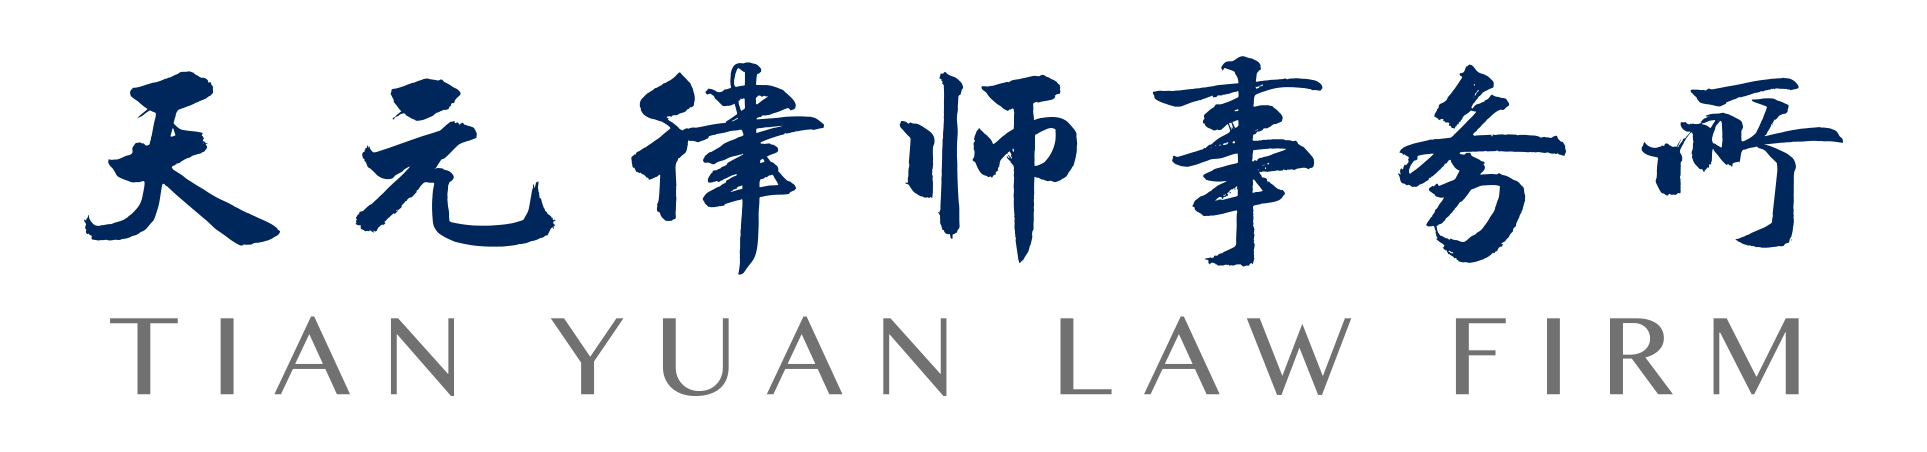 Tianyuan